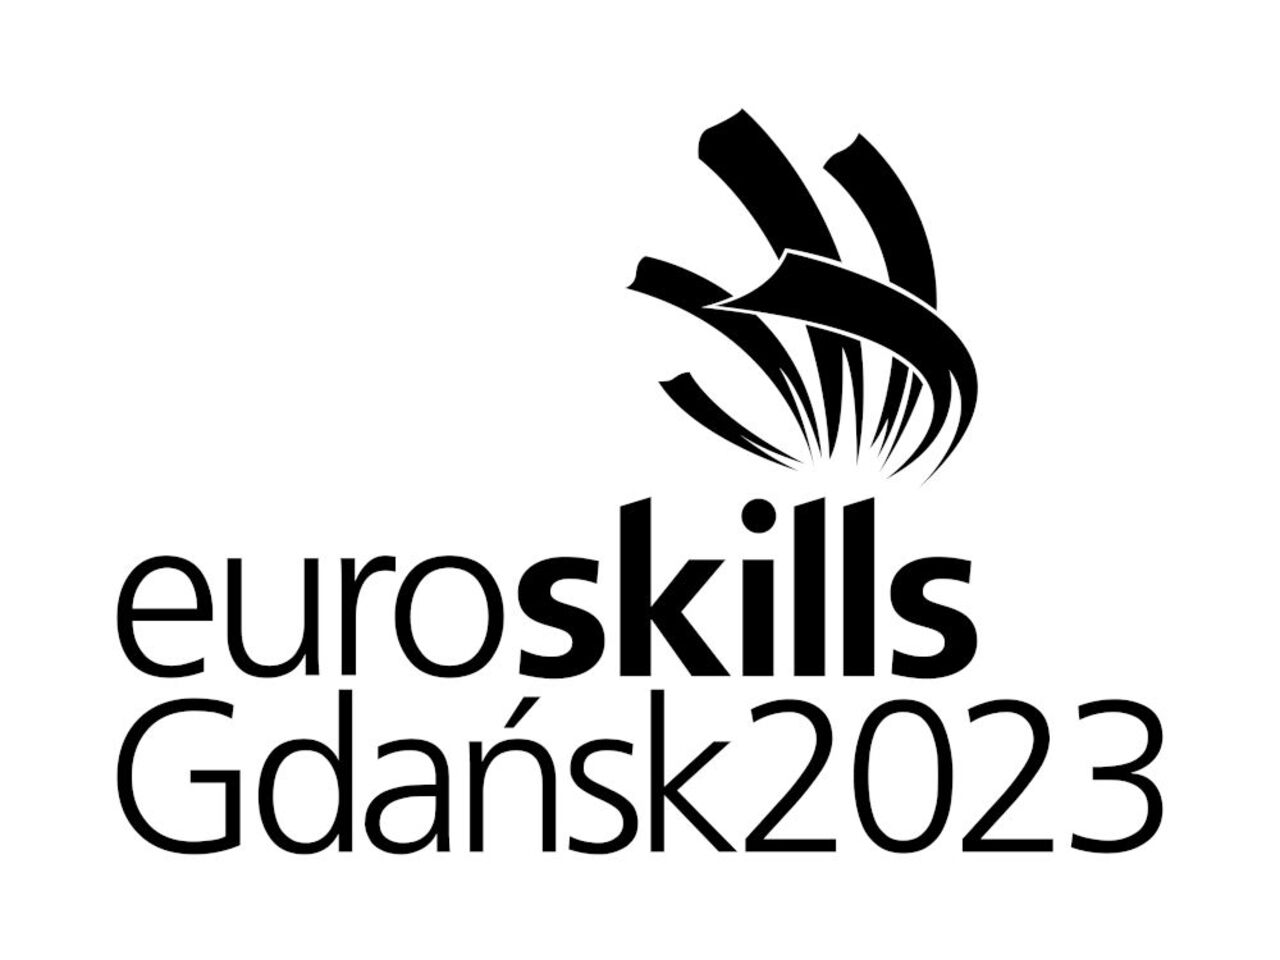 Skills unite Poland as Gdańsk prepares to host EuroSkills 2023